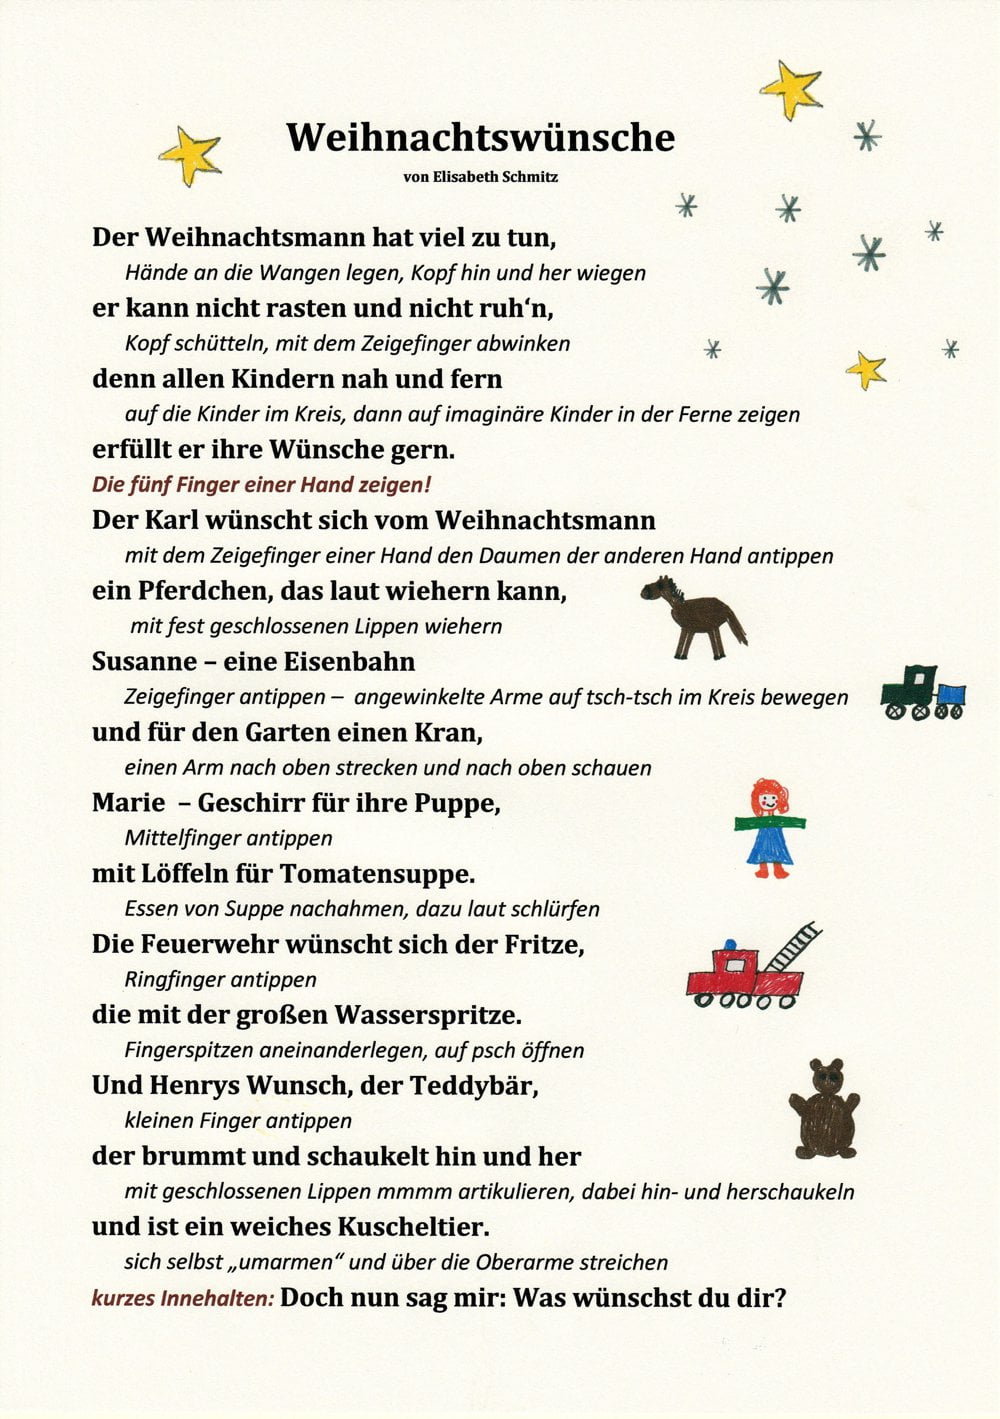 Weihnachtsgedicht Elisabeth Schmitz - Ein Weihnachtsgedicht mit Bewegungen